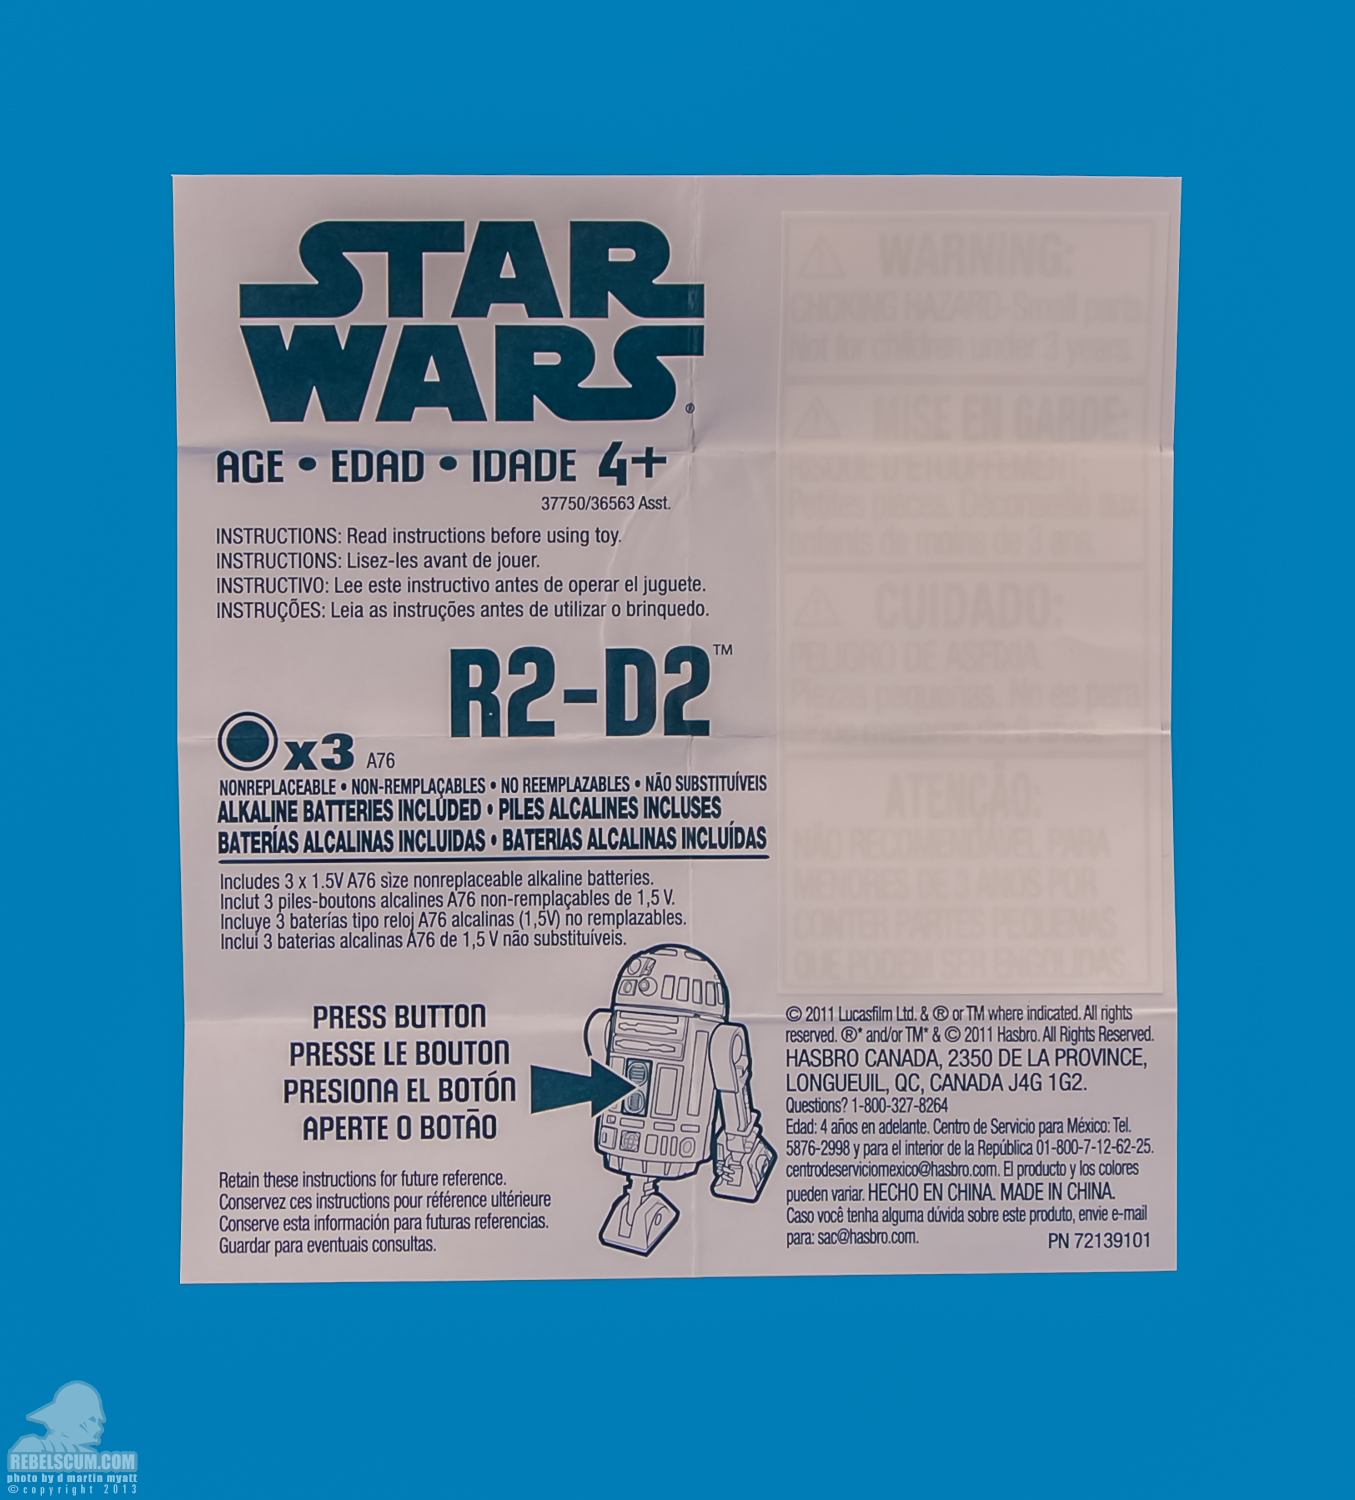 MH05_2013_R2-D2_Movie_Heroes_Star_Wars-05.jpg